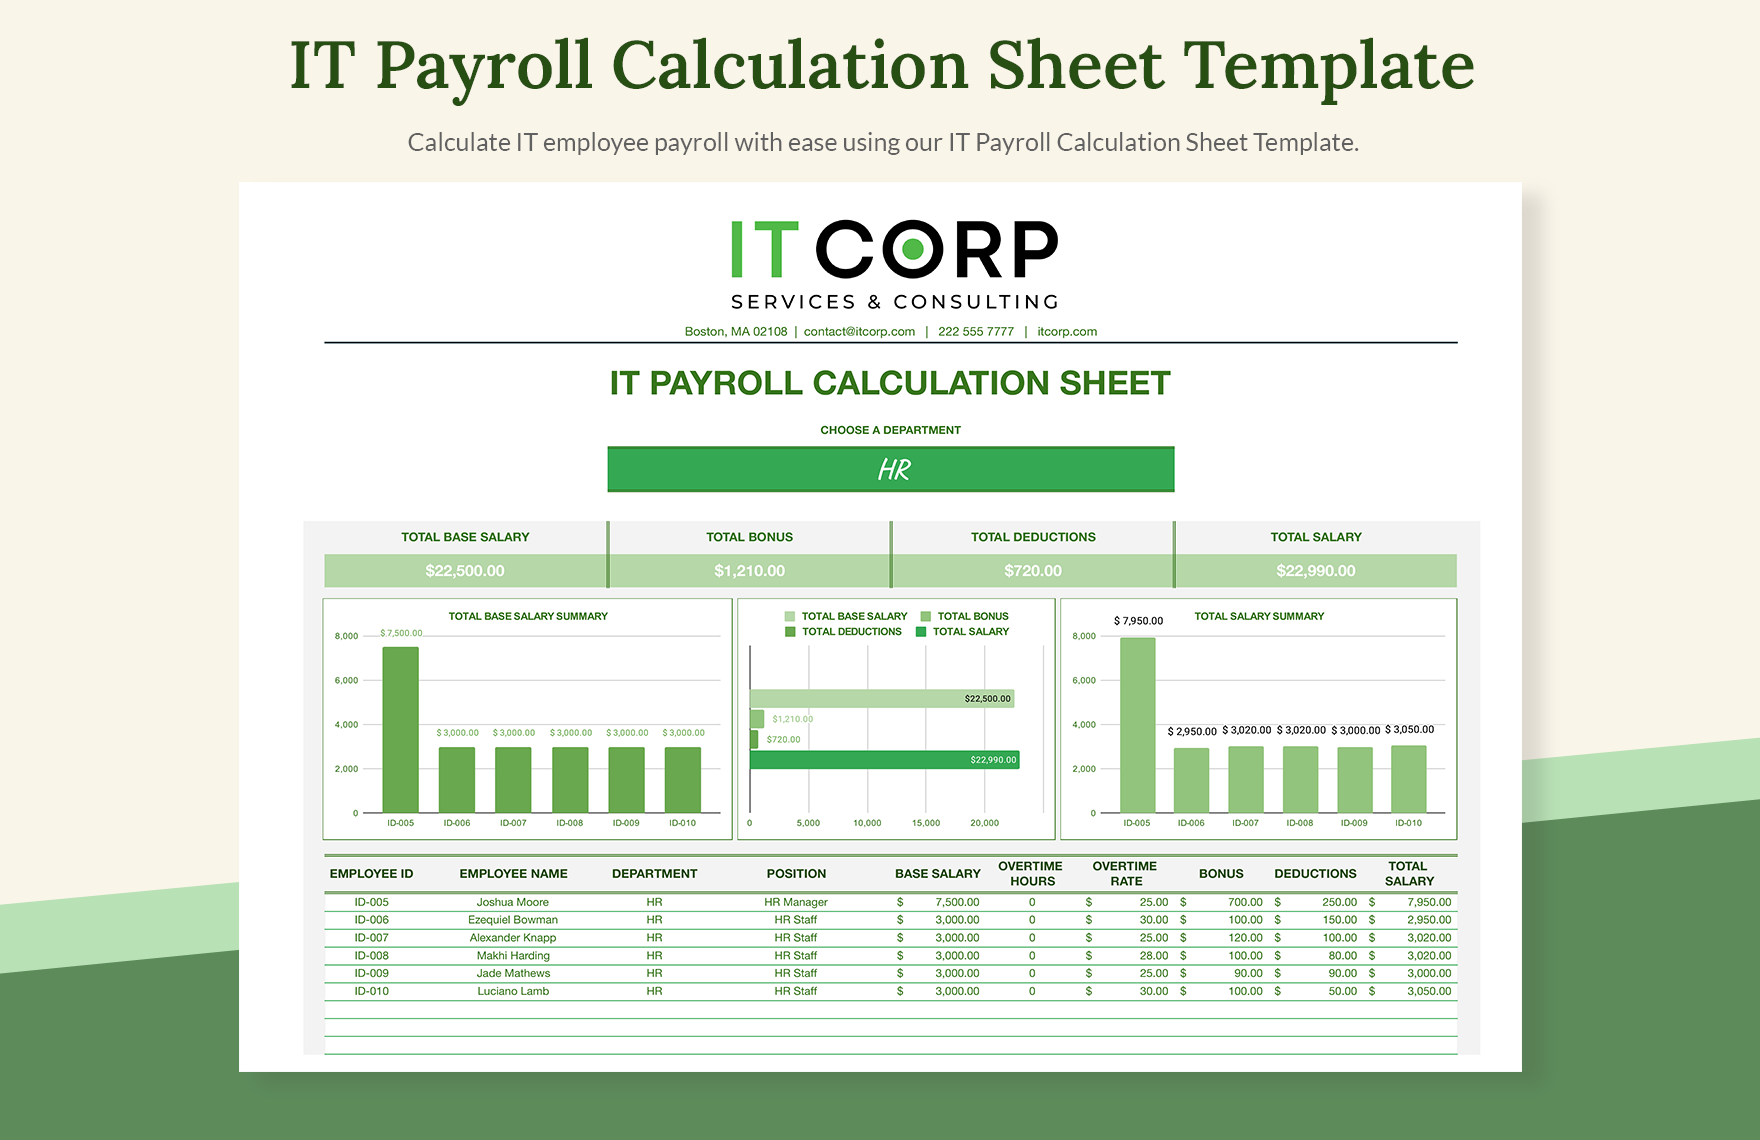 IT Payroll Calculation Sheet Template